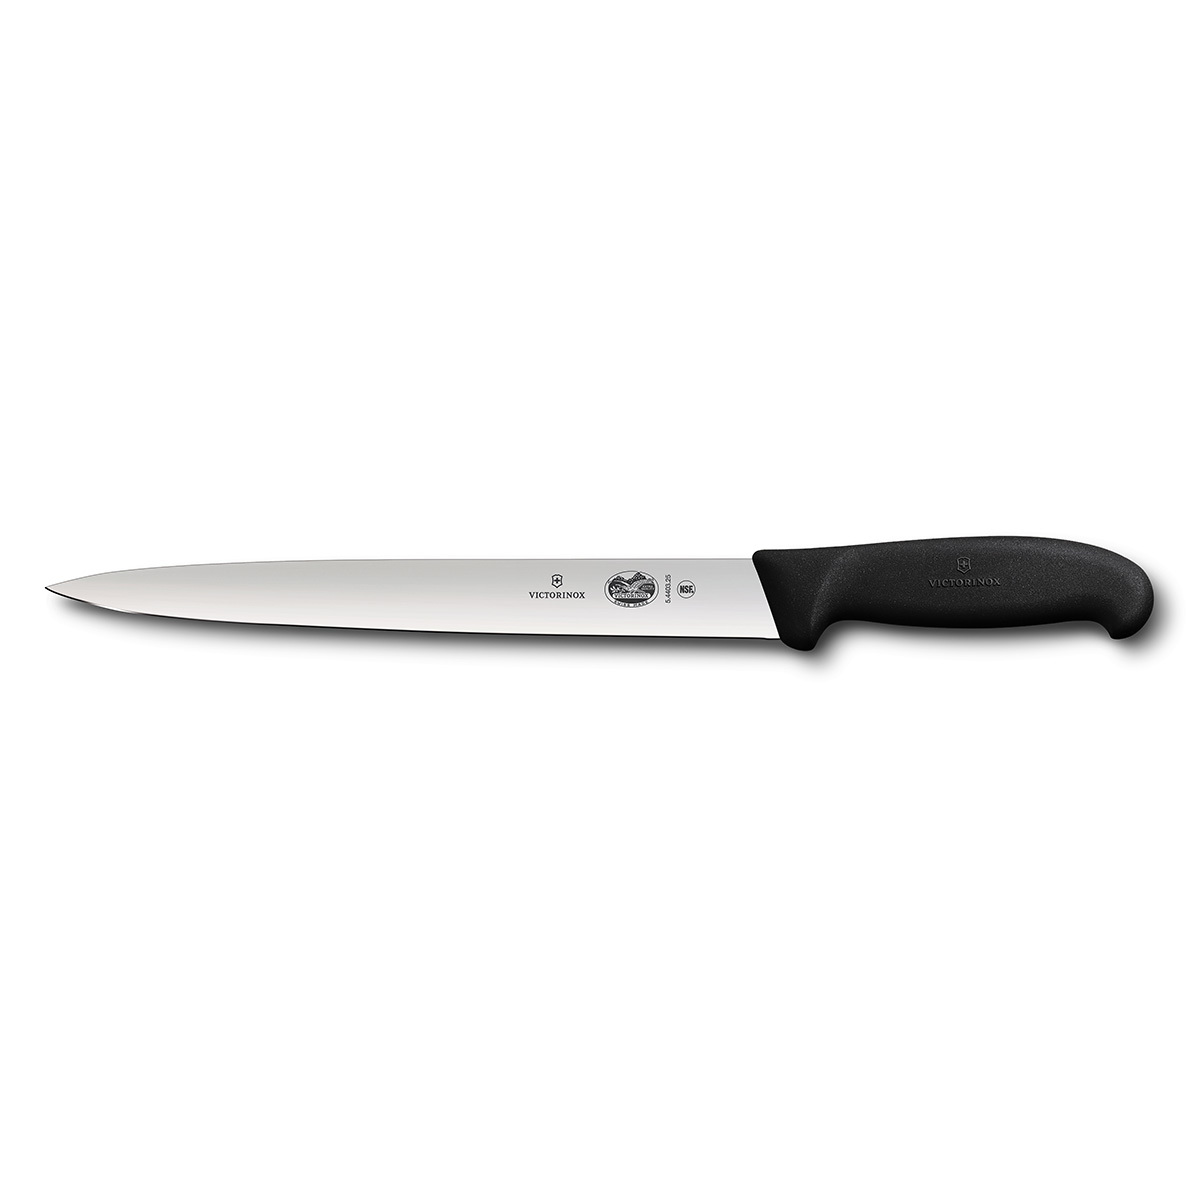 Кухонный нож для тонкой резки Victorinox 5.4403.25 кухонный нож для тонкой резки victorinox 5 4403 25